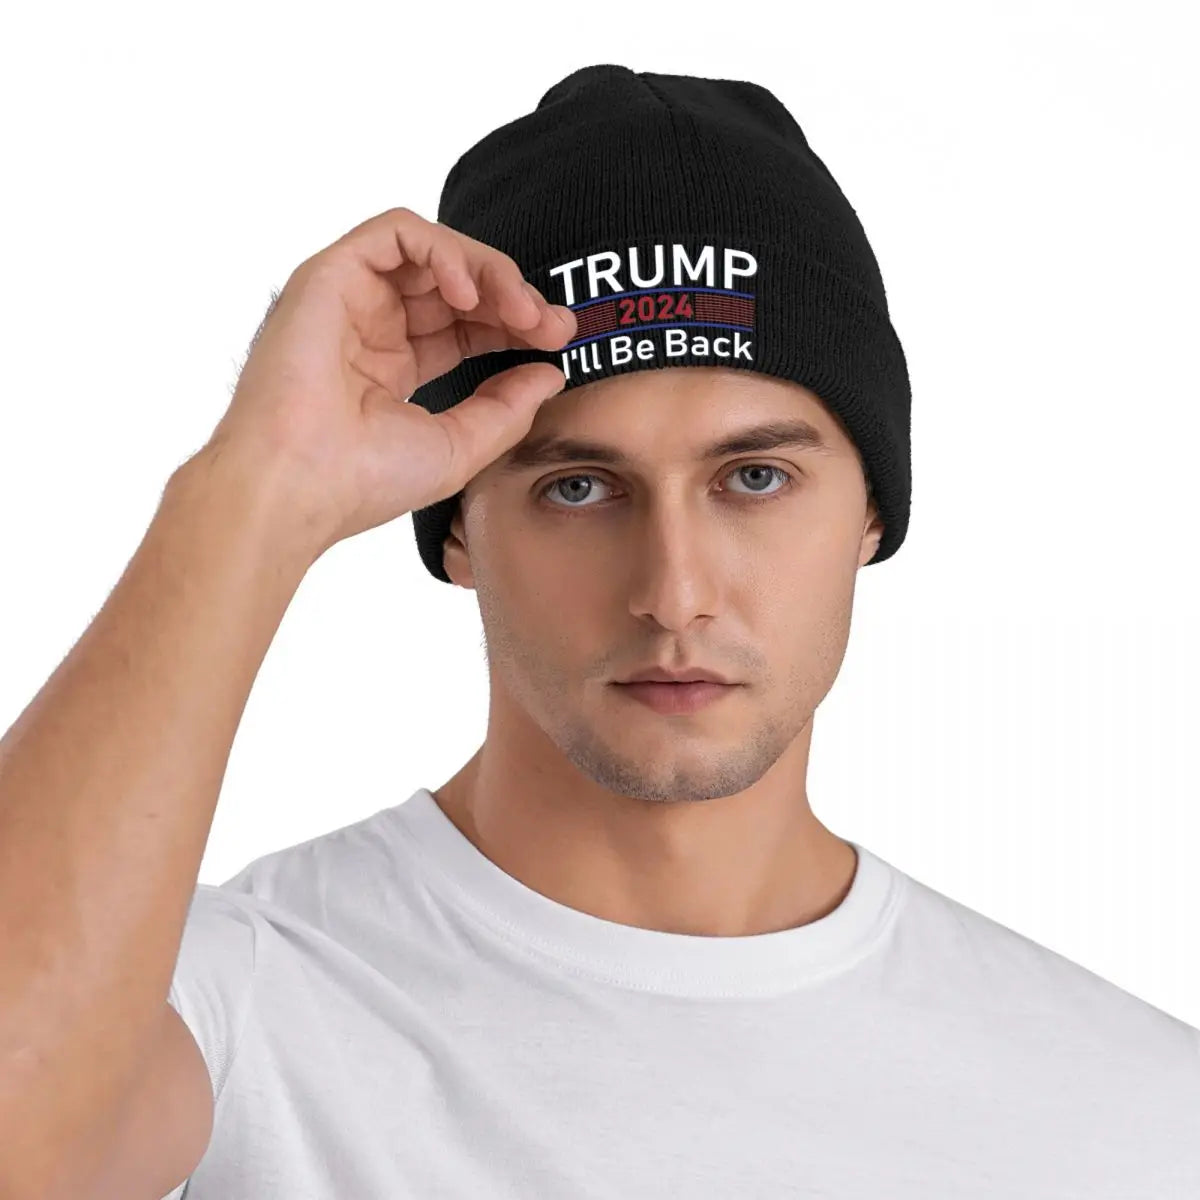 Trump 2024 I'll Be Back Bonnet Hats